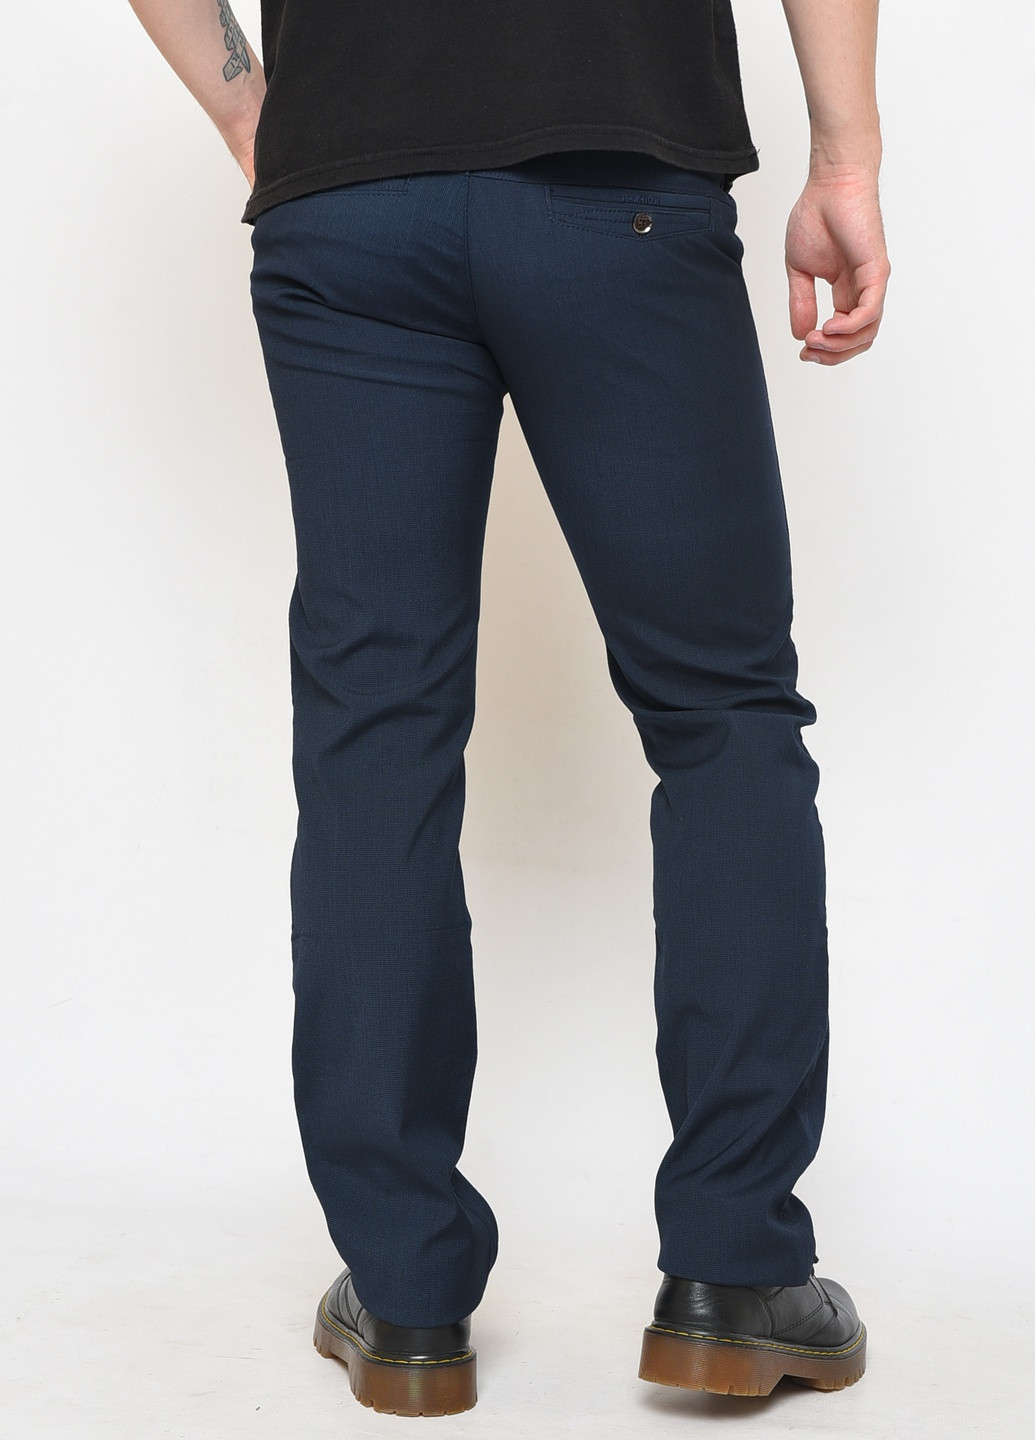 Темно-синие демисезонные прямые штаны мужские темно-синего цвета Let's Shop